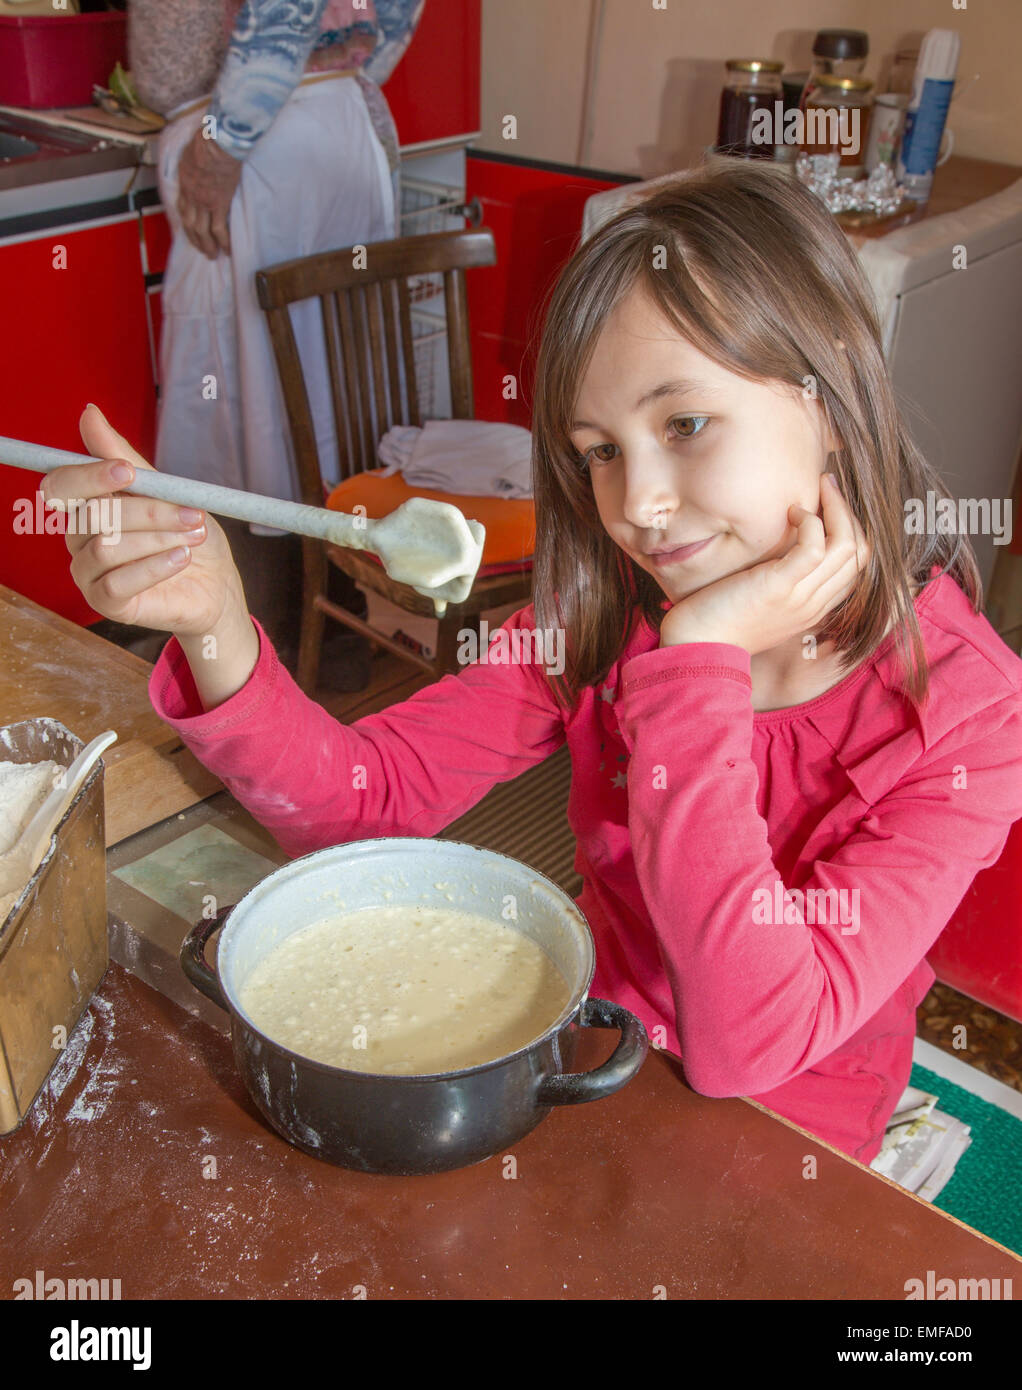 Jeune fille à la gustation unsuccess - cuisine Banque D'Images